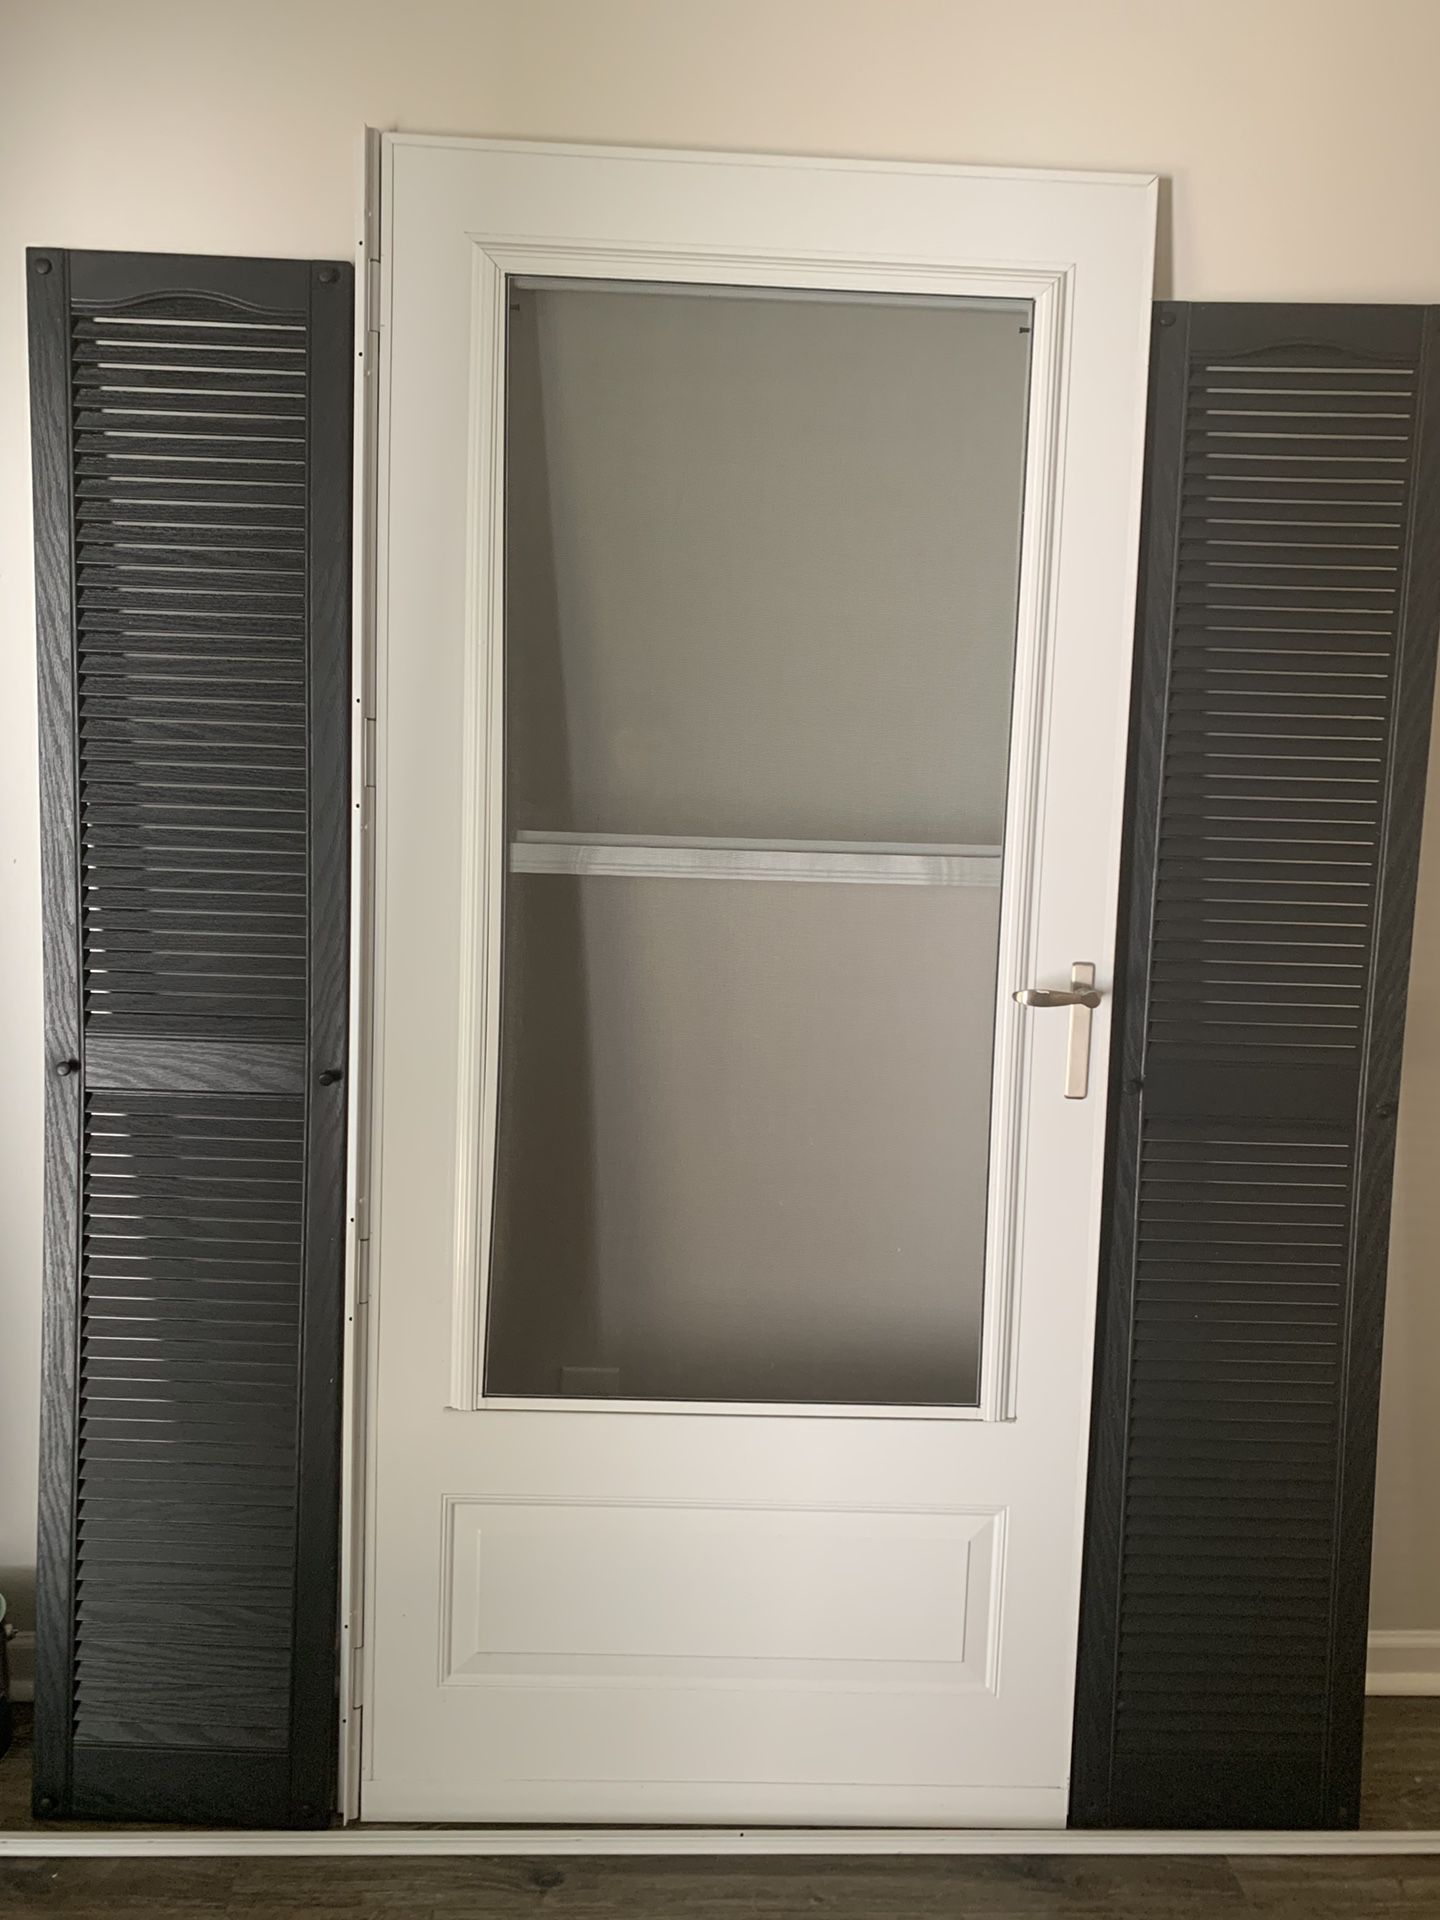 New Screen Door with 6’ black shutters